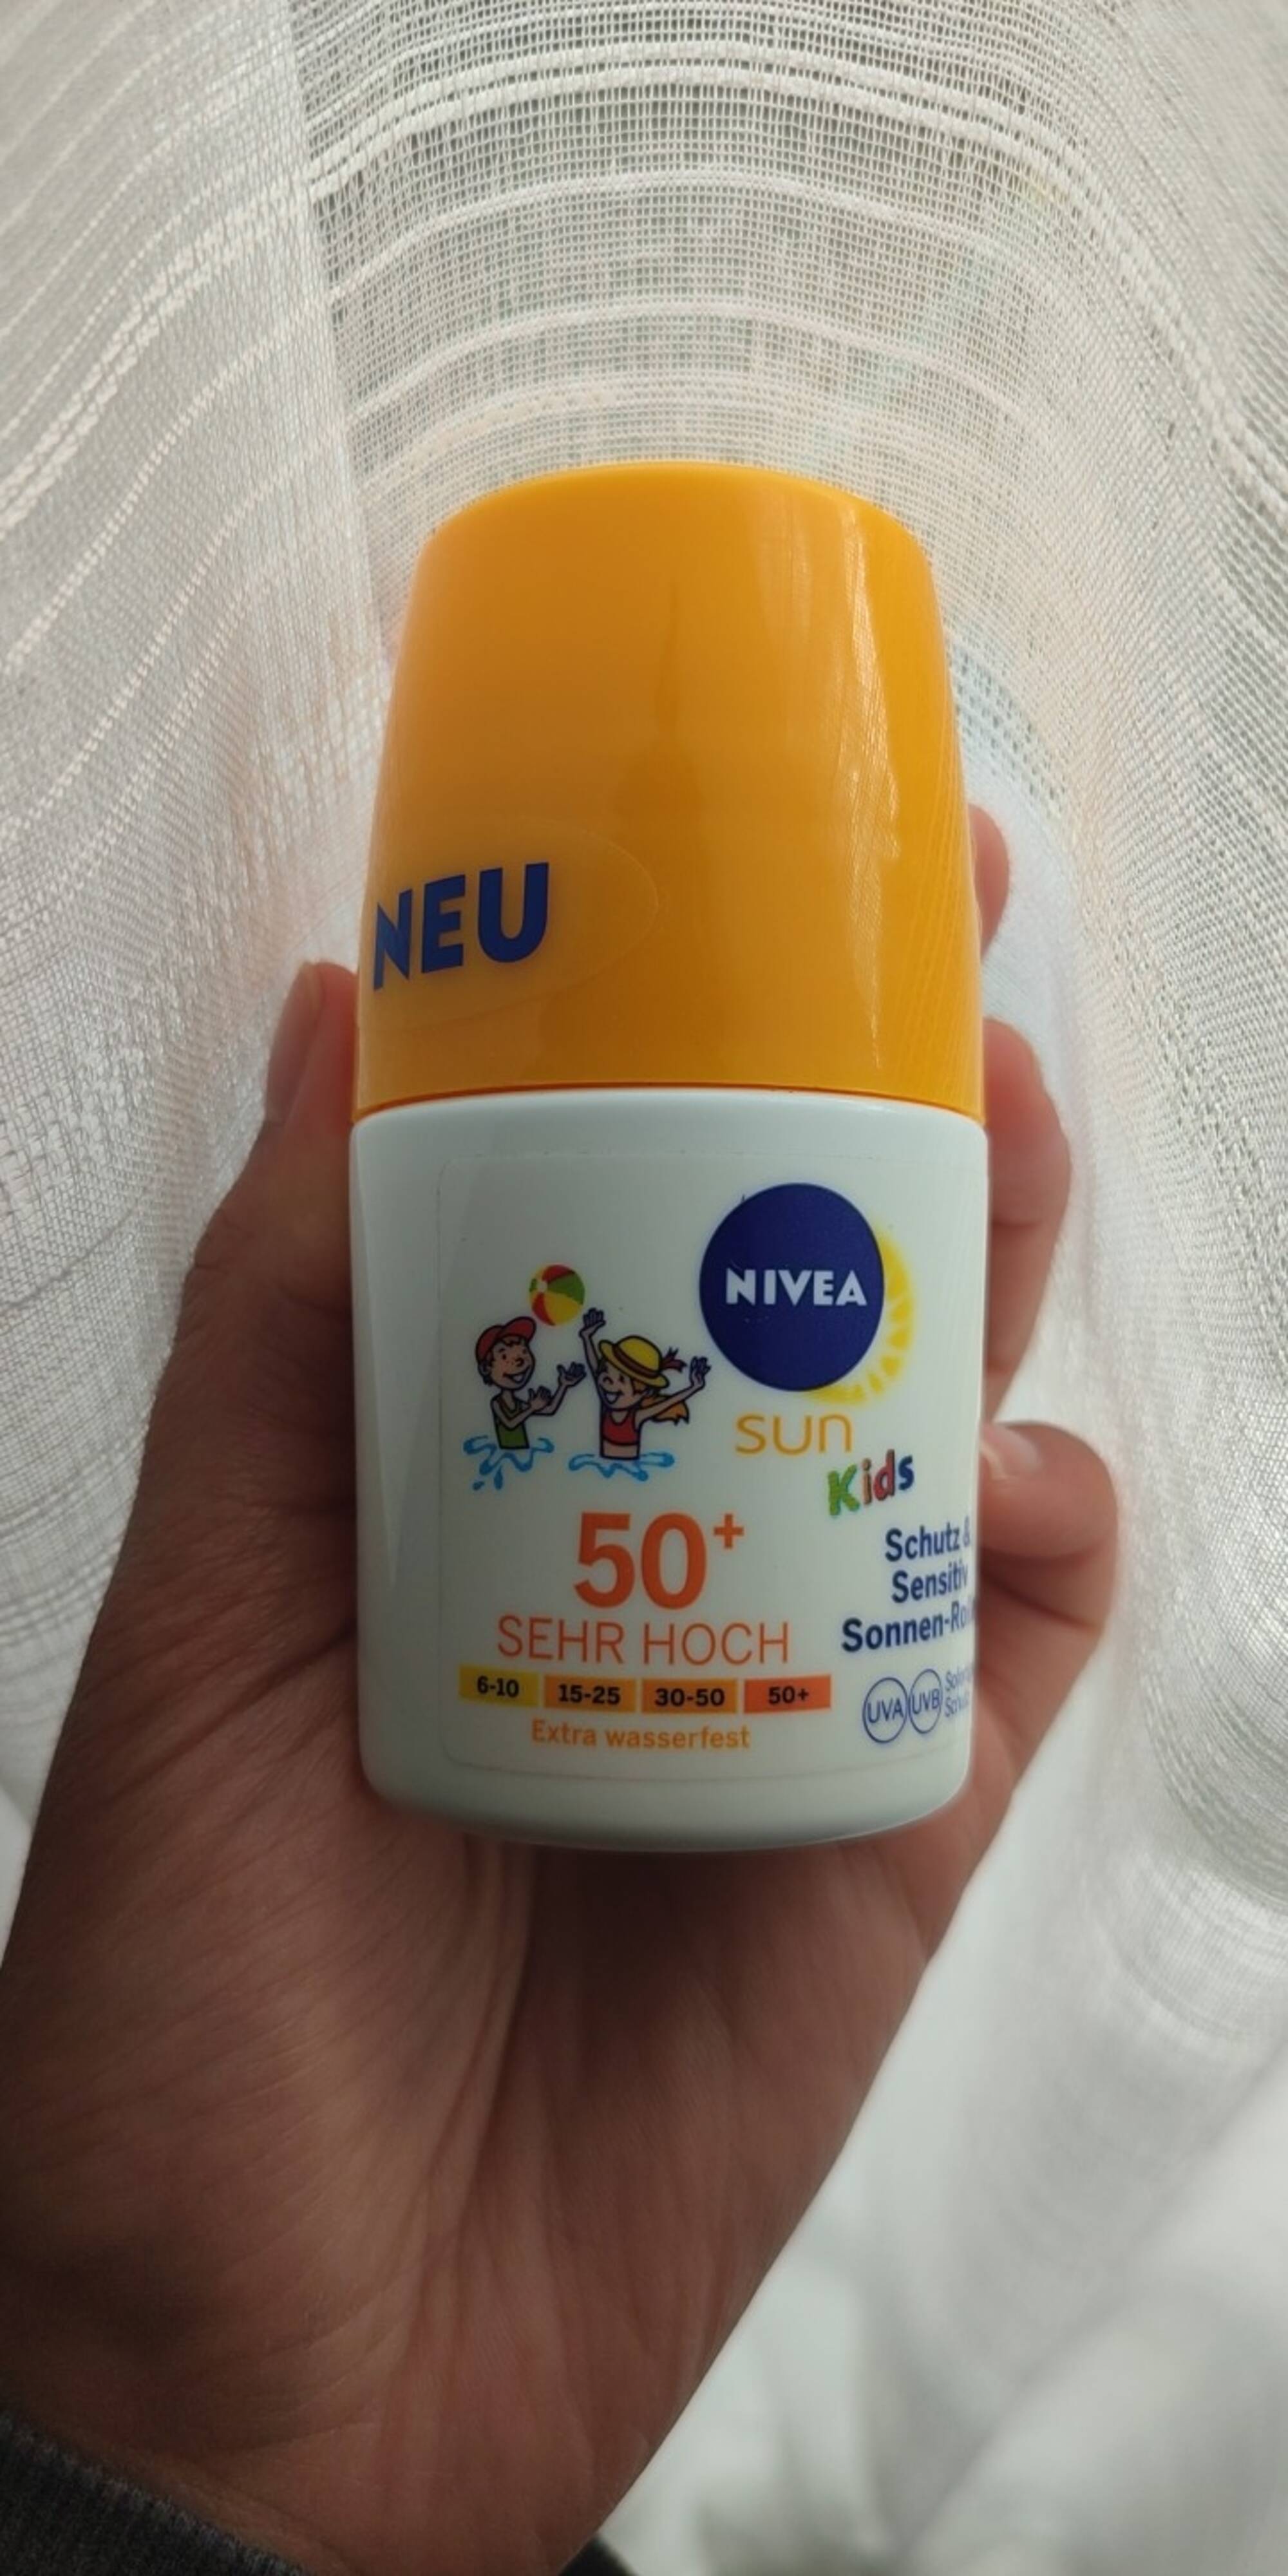 NIVEA - Sun kids - Sonnen-roll on 50+